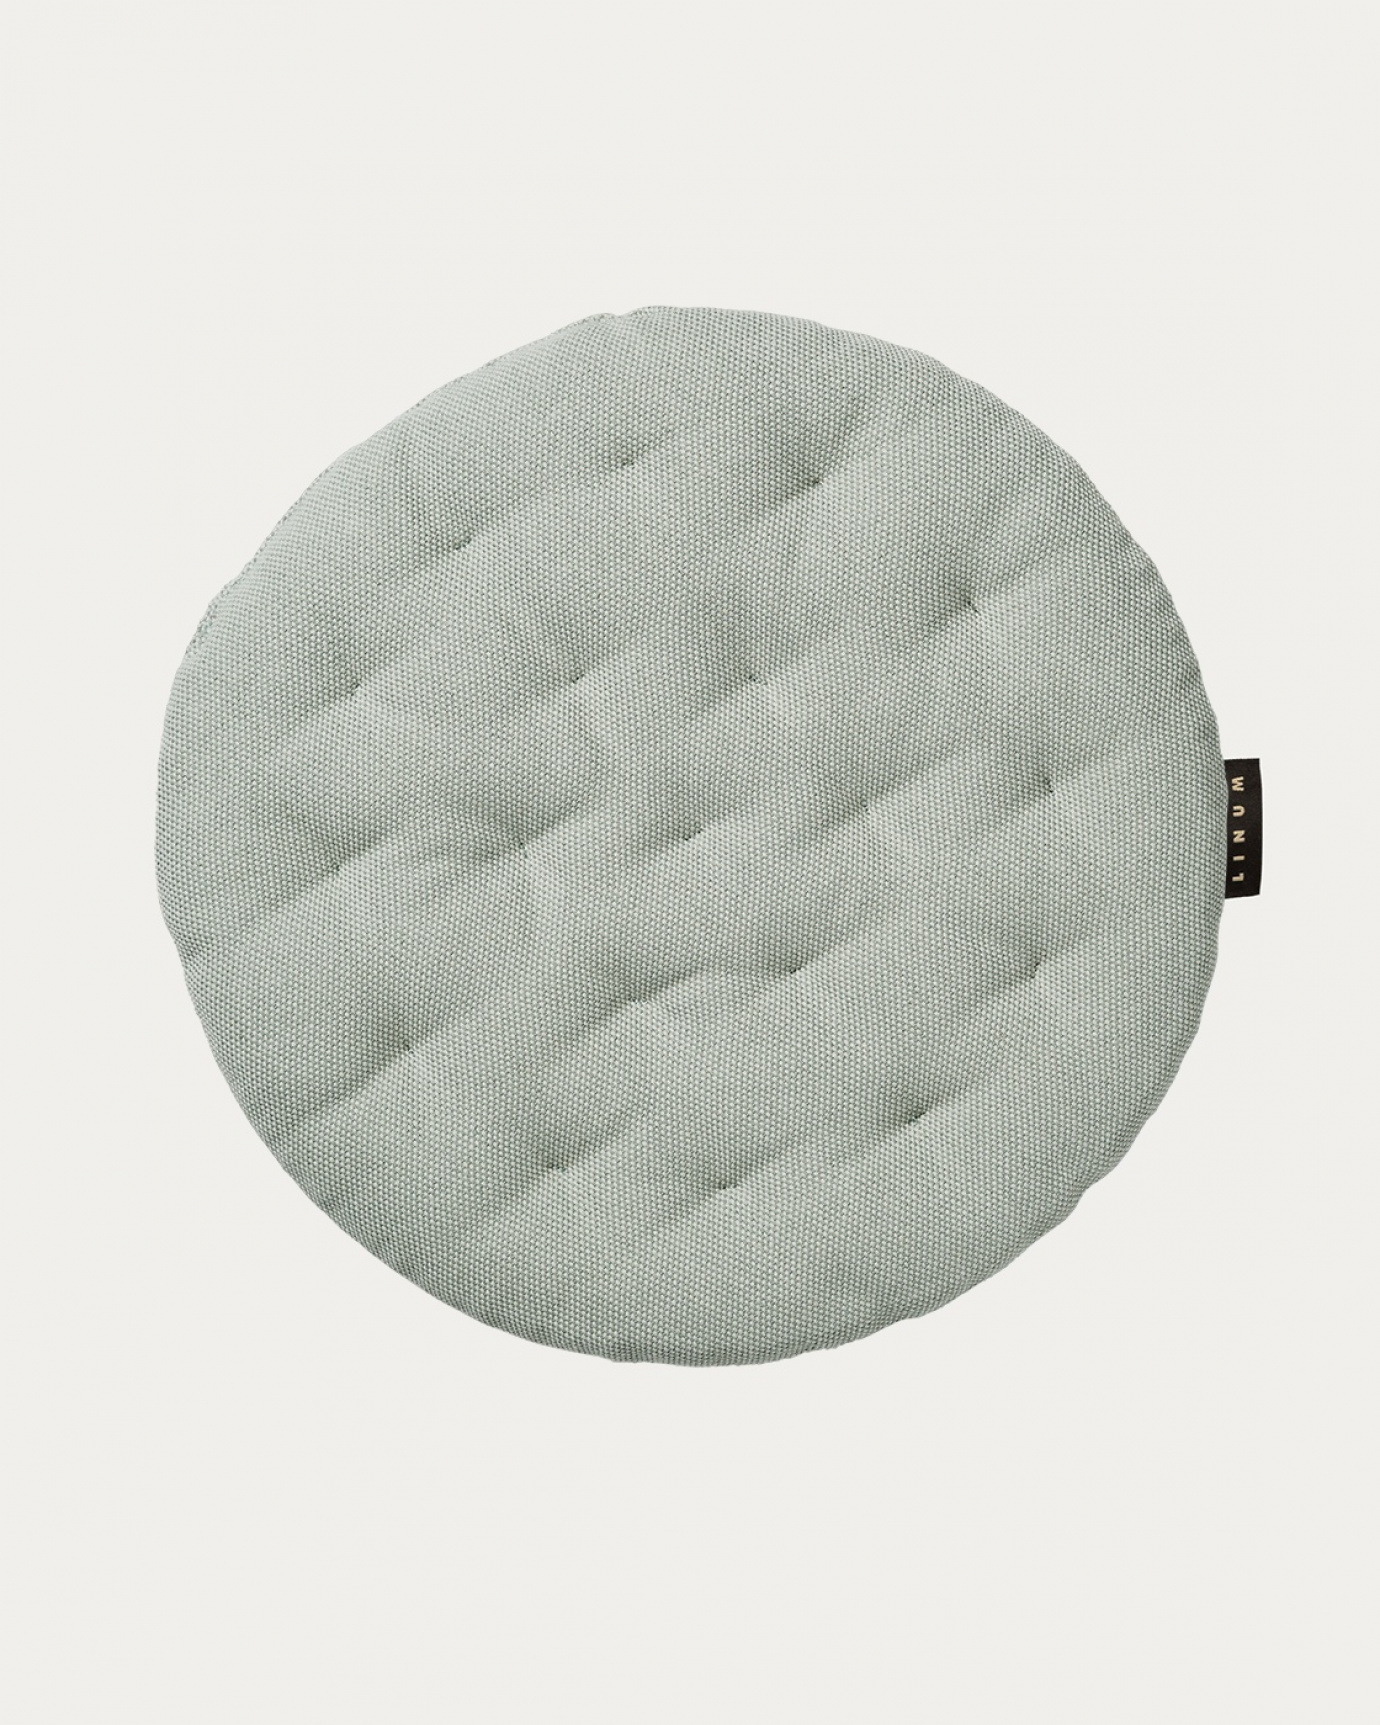 Immagine prodotto verde ghiaccio chiaro PEPPER cuscini sedie di cotone con imbottitura in poliestere di LINUM DESIGN. Dimensioni ø37 cm.